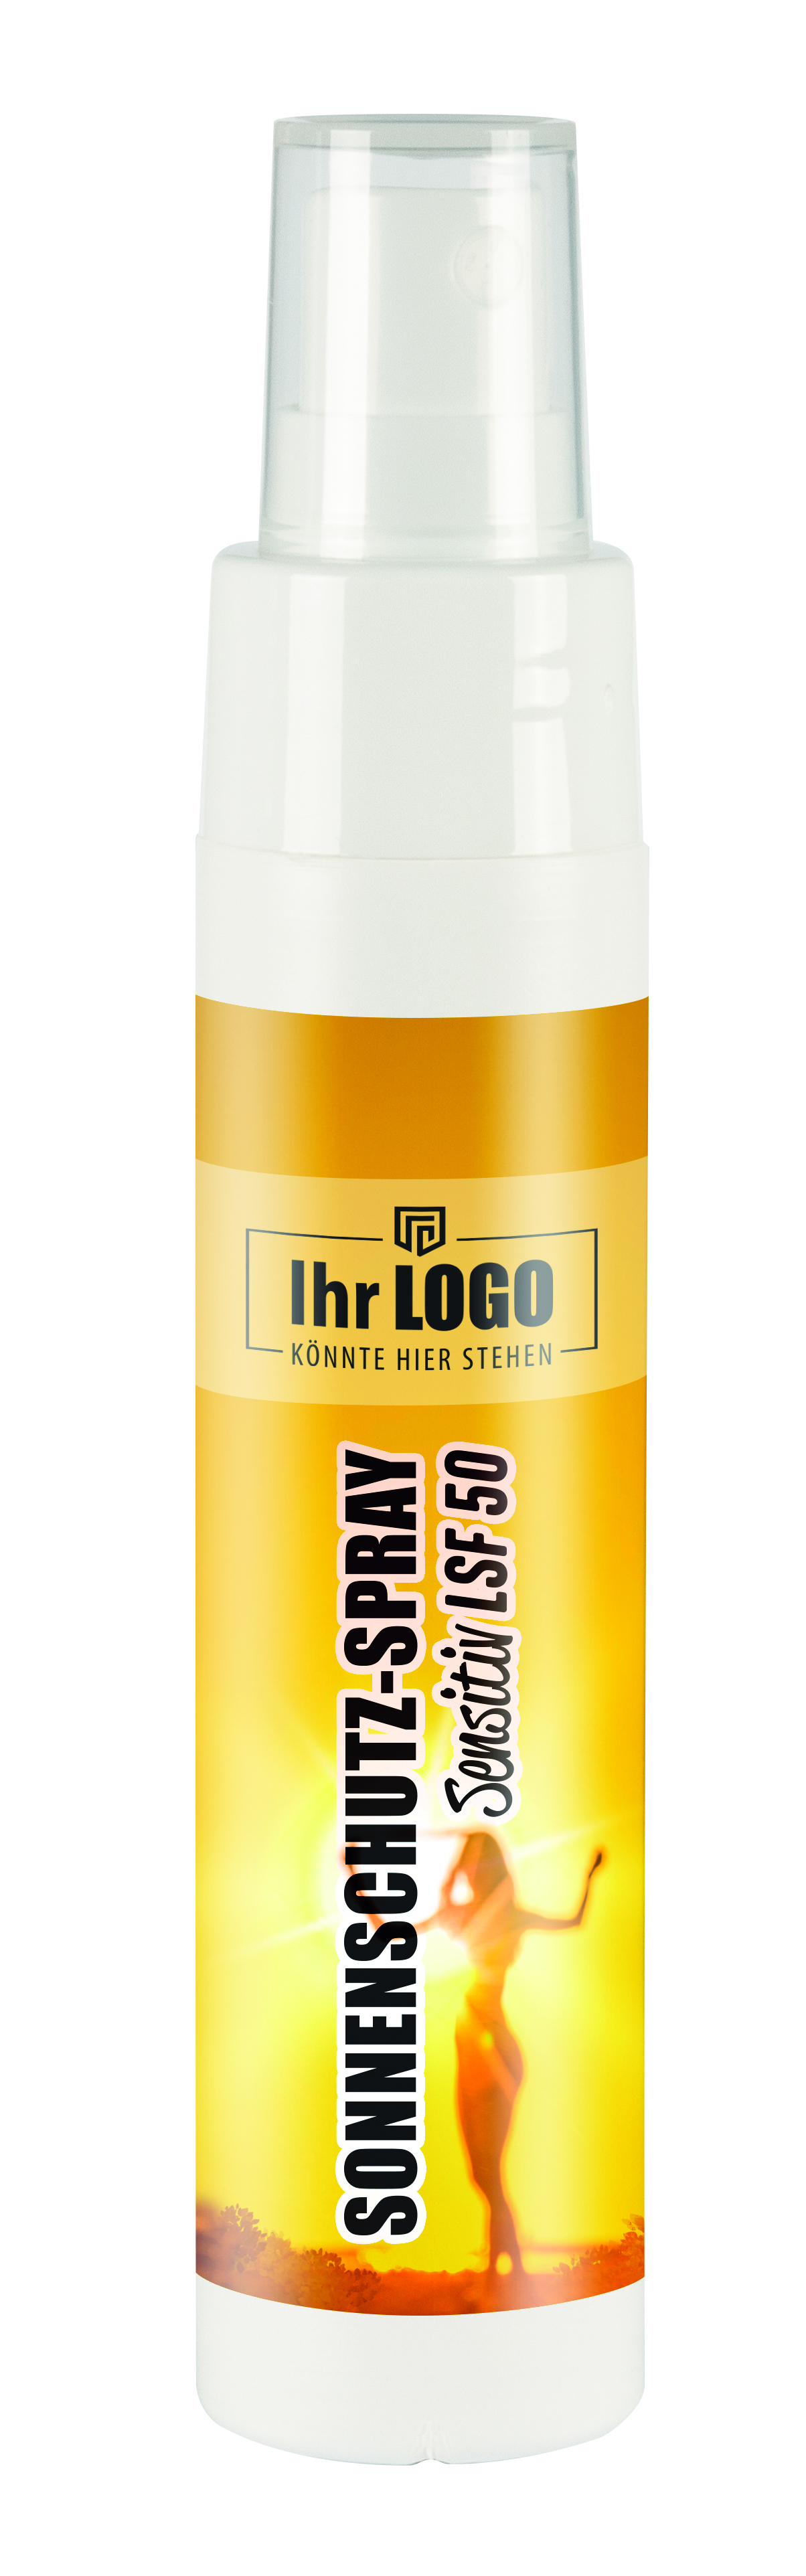 50 ml Sprayflasche "Slim" mit Sonnenschutz-Spray "Sensitiv" LSF 50